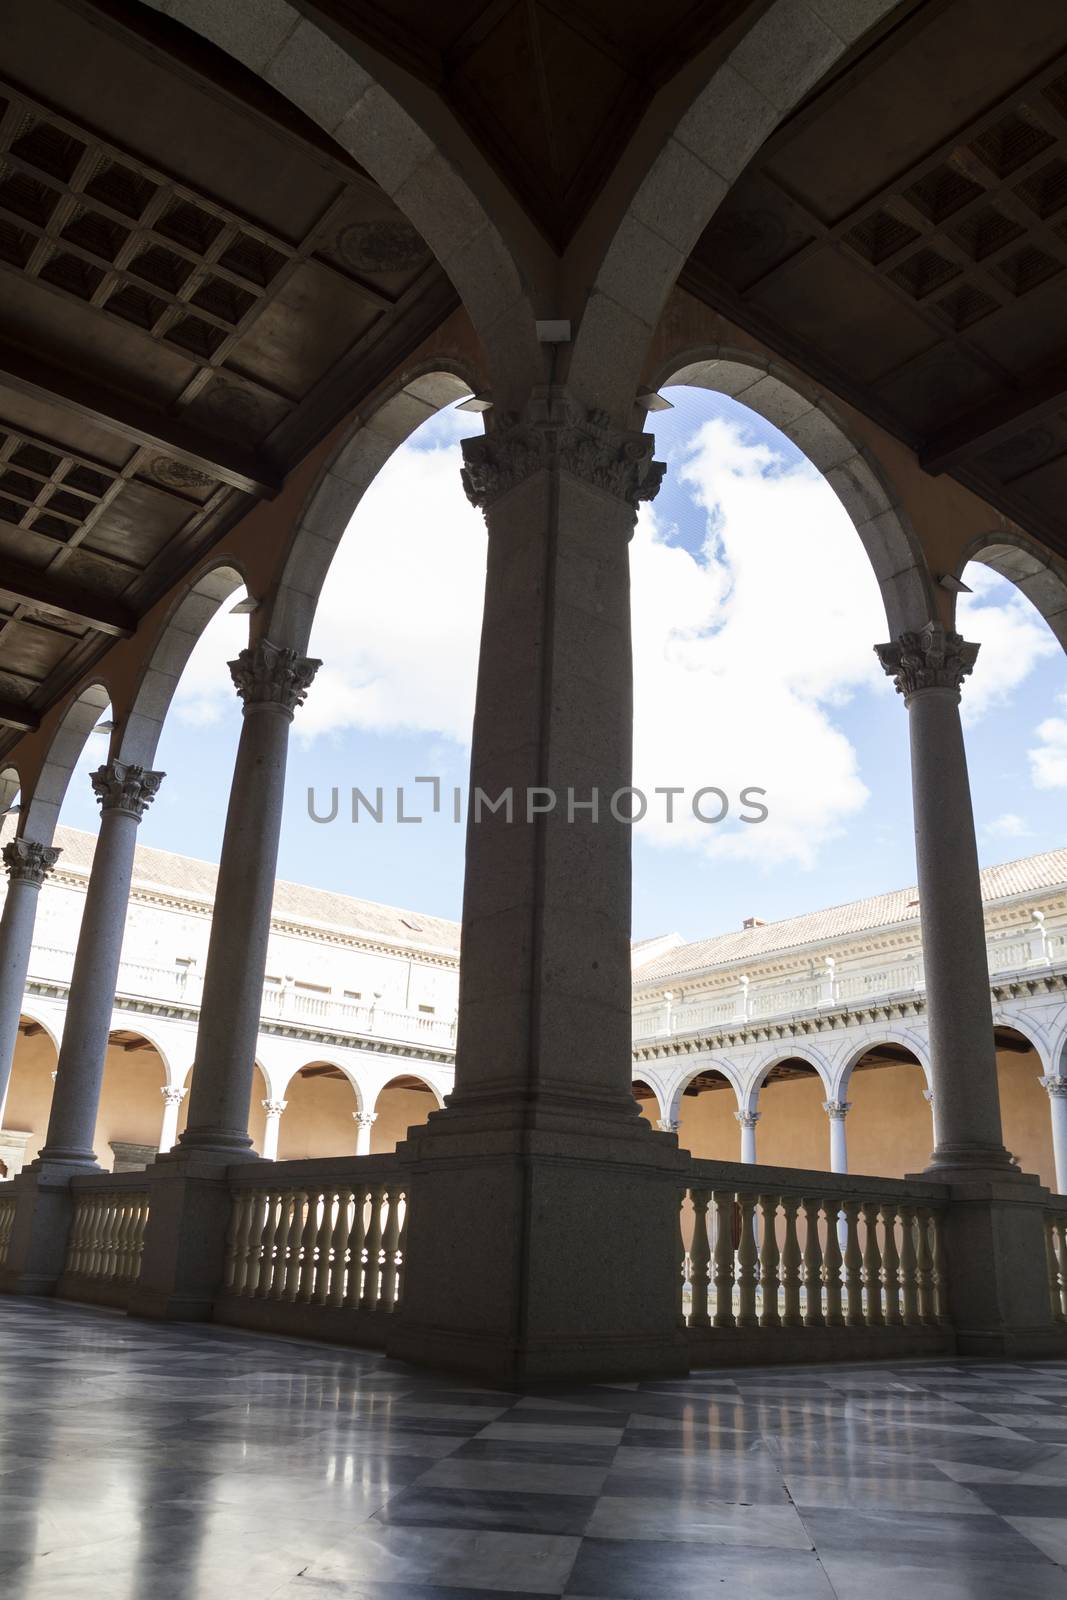 Indoor palace, Alcazar de Toledo, Spain by FernandoCortes